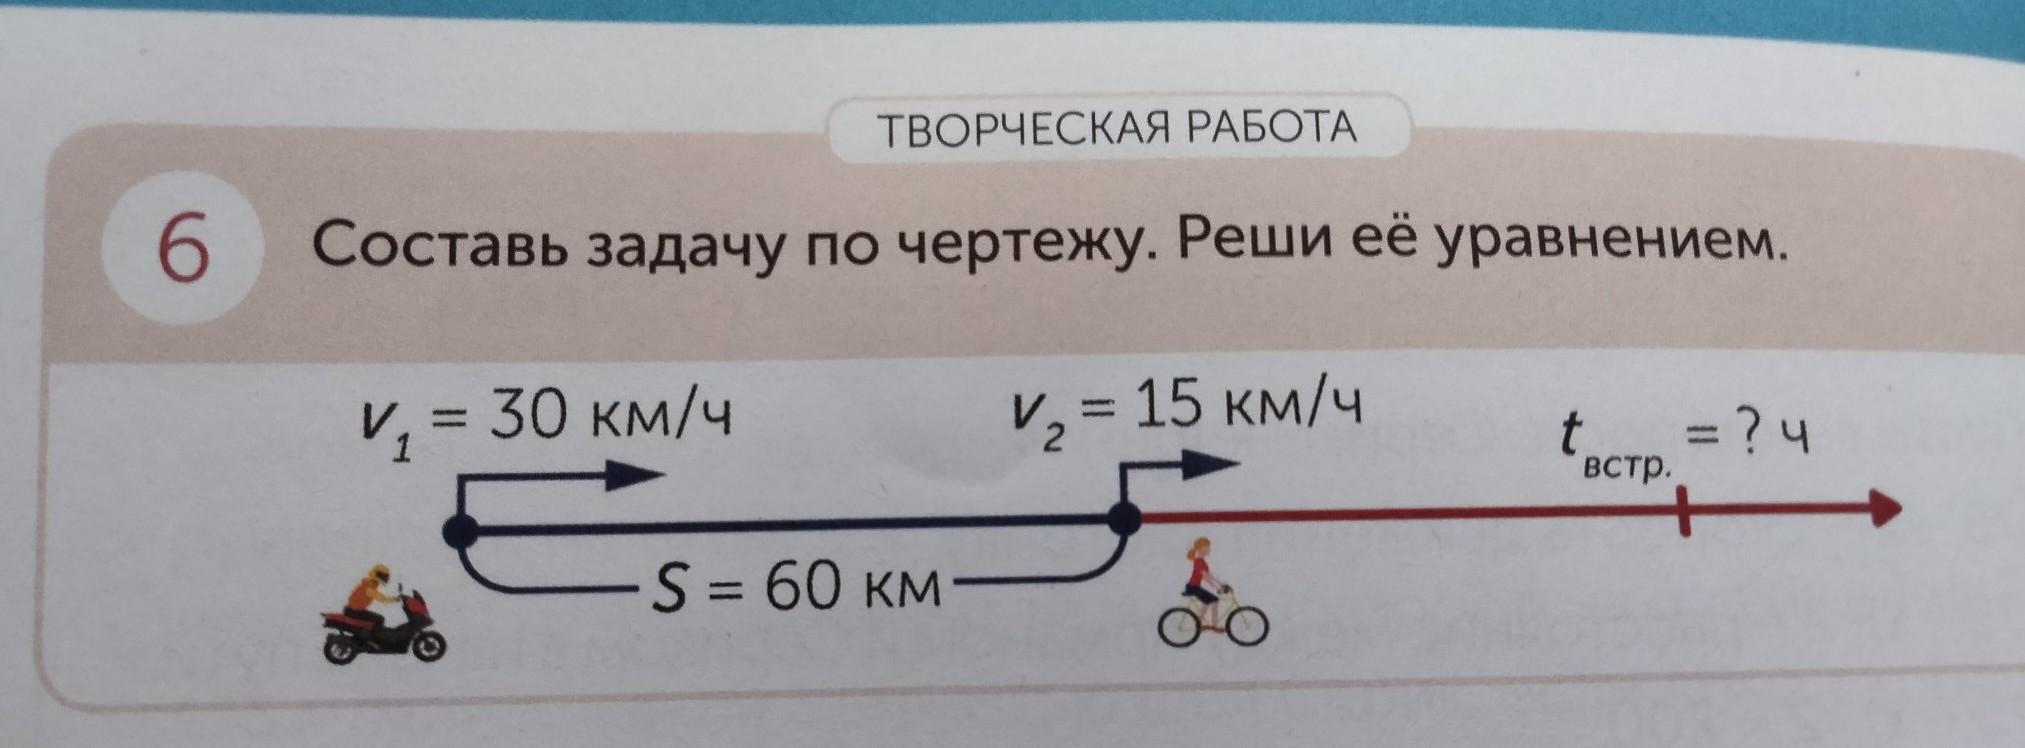 Устно составьте по чертежу задачу и решите ее 30 км/ч 50 км/ч 380 км ? В А С К